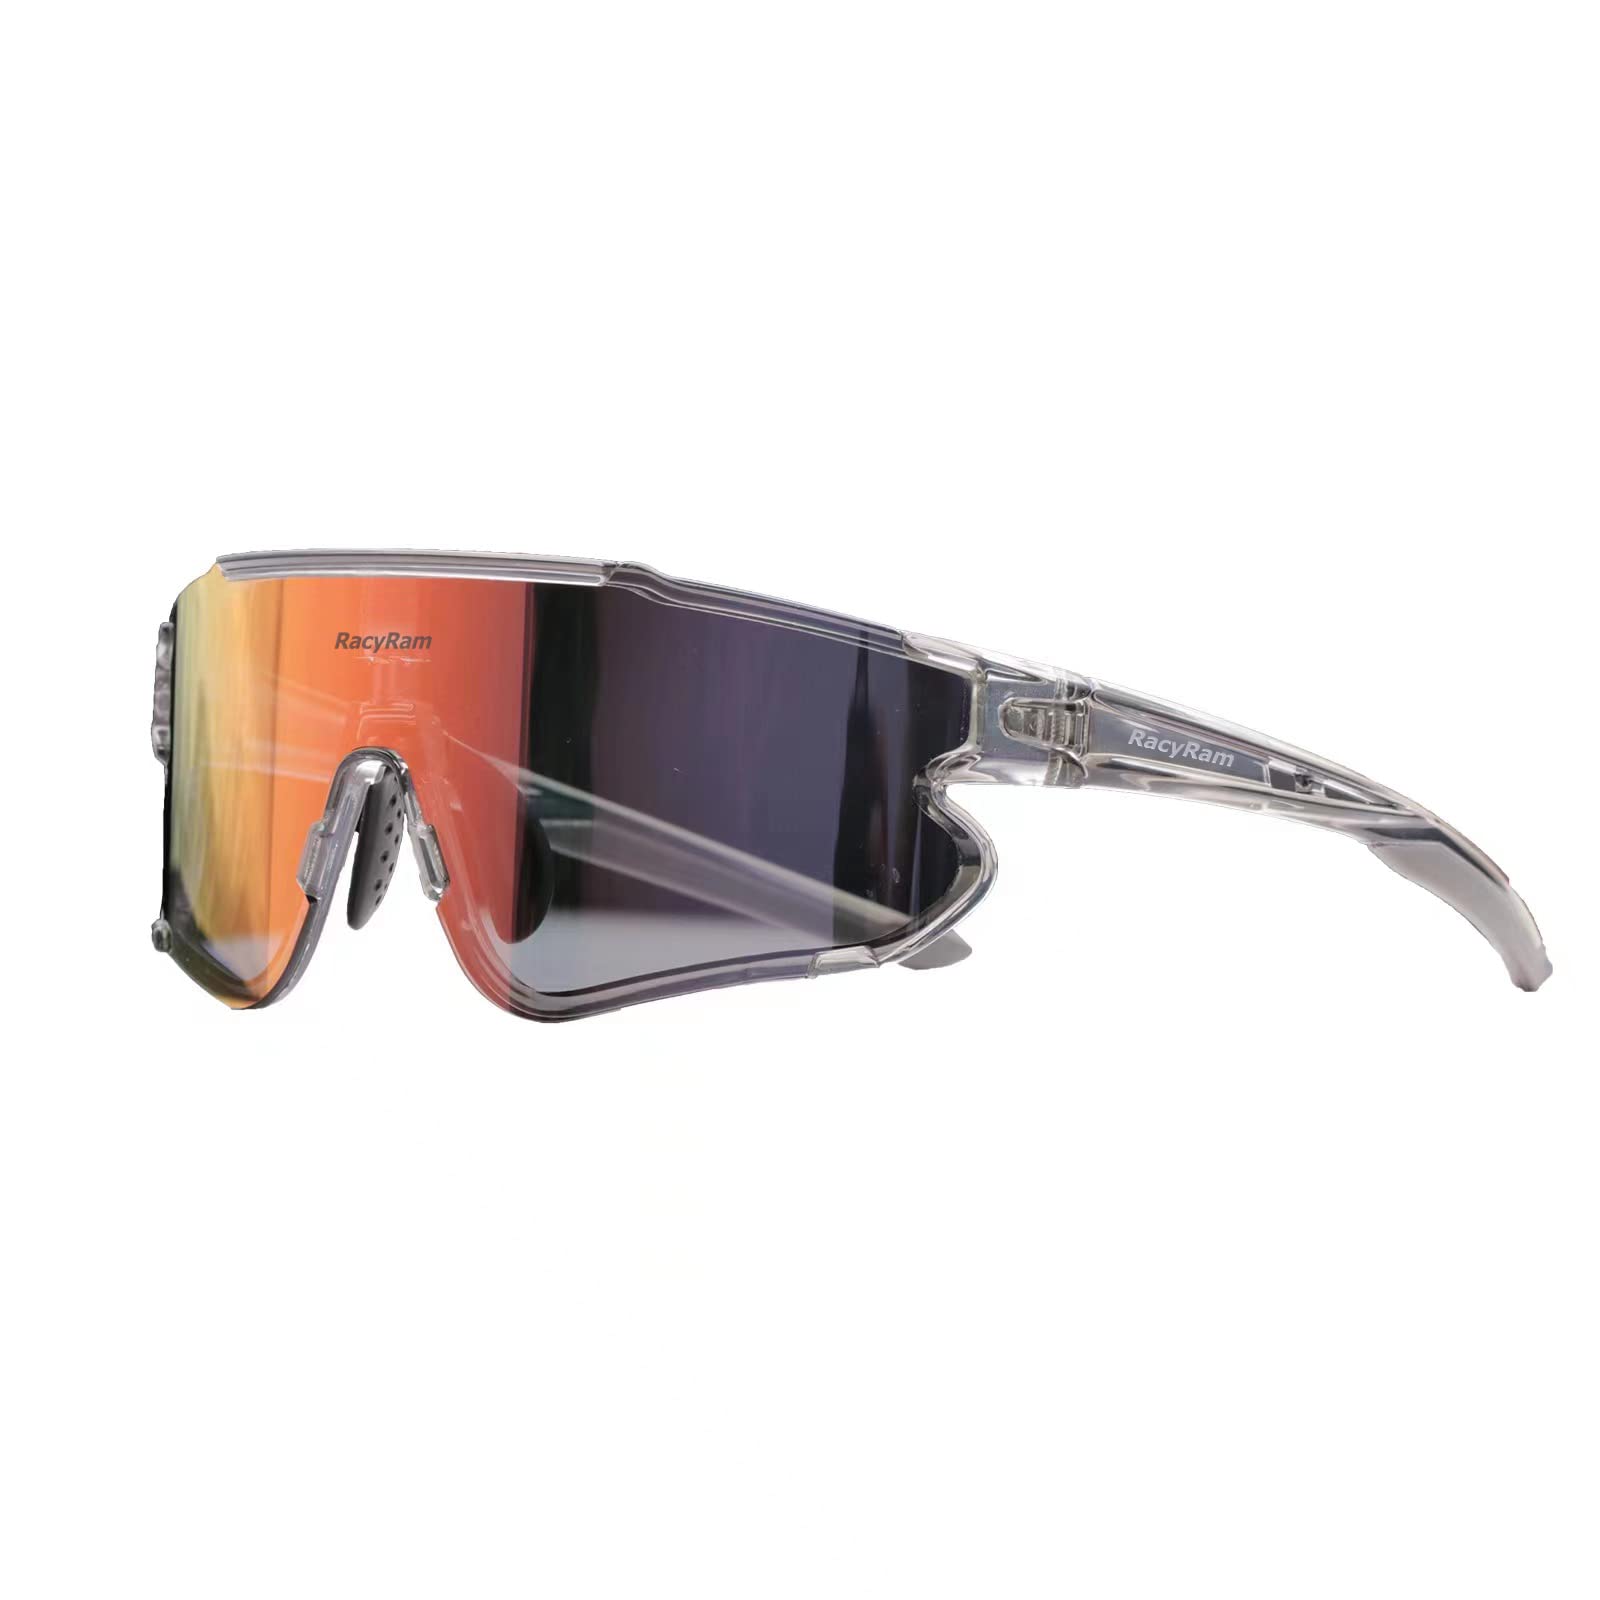 LVIOE Prescription Sunglasses Rx Sun Glasses for Unisex - Brazos